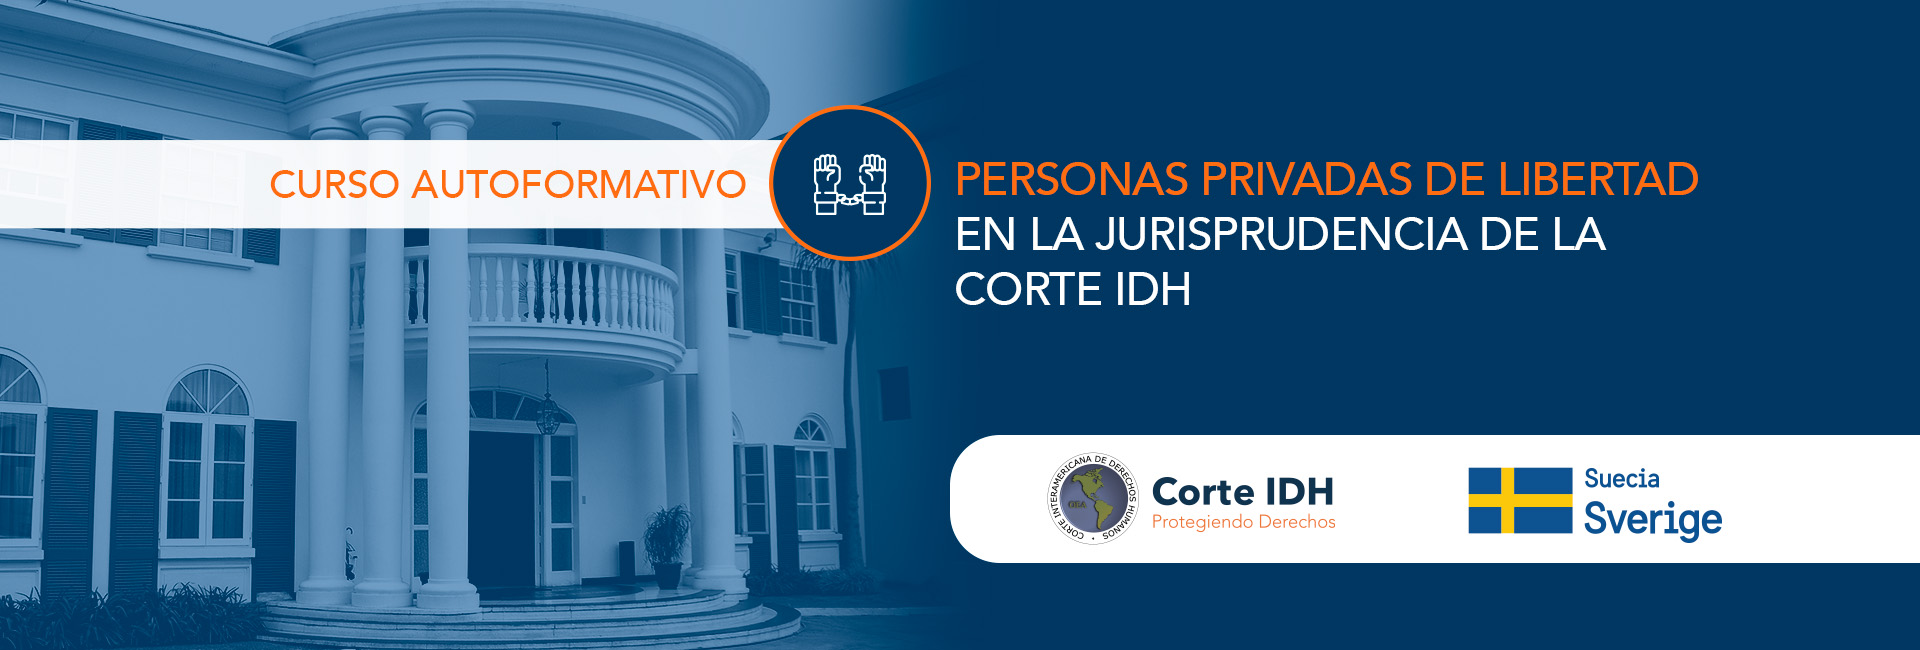 Curso Autoformativo: Persoanas privadas de libertad en la jurisprudencia del al Corte IDH.